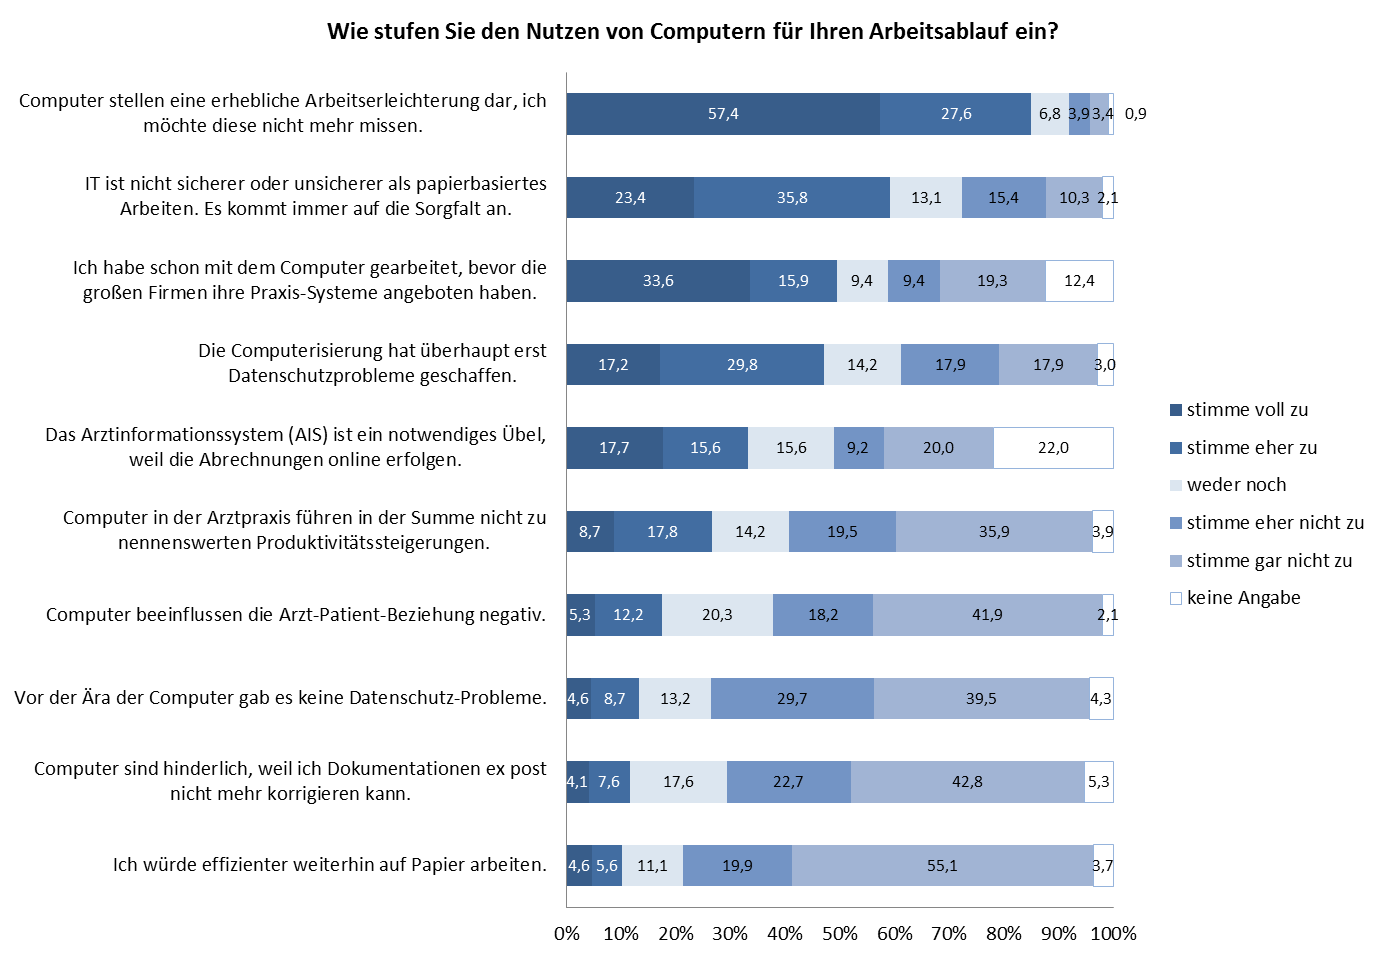 Abbildung 7: Bewertung des Nutzens von Computern für den Arbeitsablauf (n=432-439) Bei der Frage, wie die Ärzte den Nutzen von Computern für den Arbeitsablauf in der Praxis einschätzen, zeigt sich